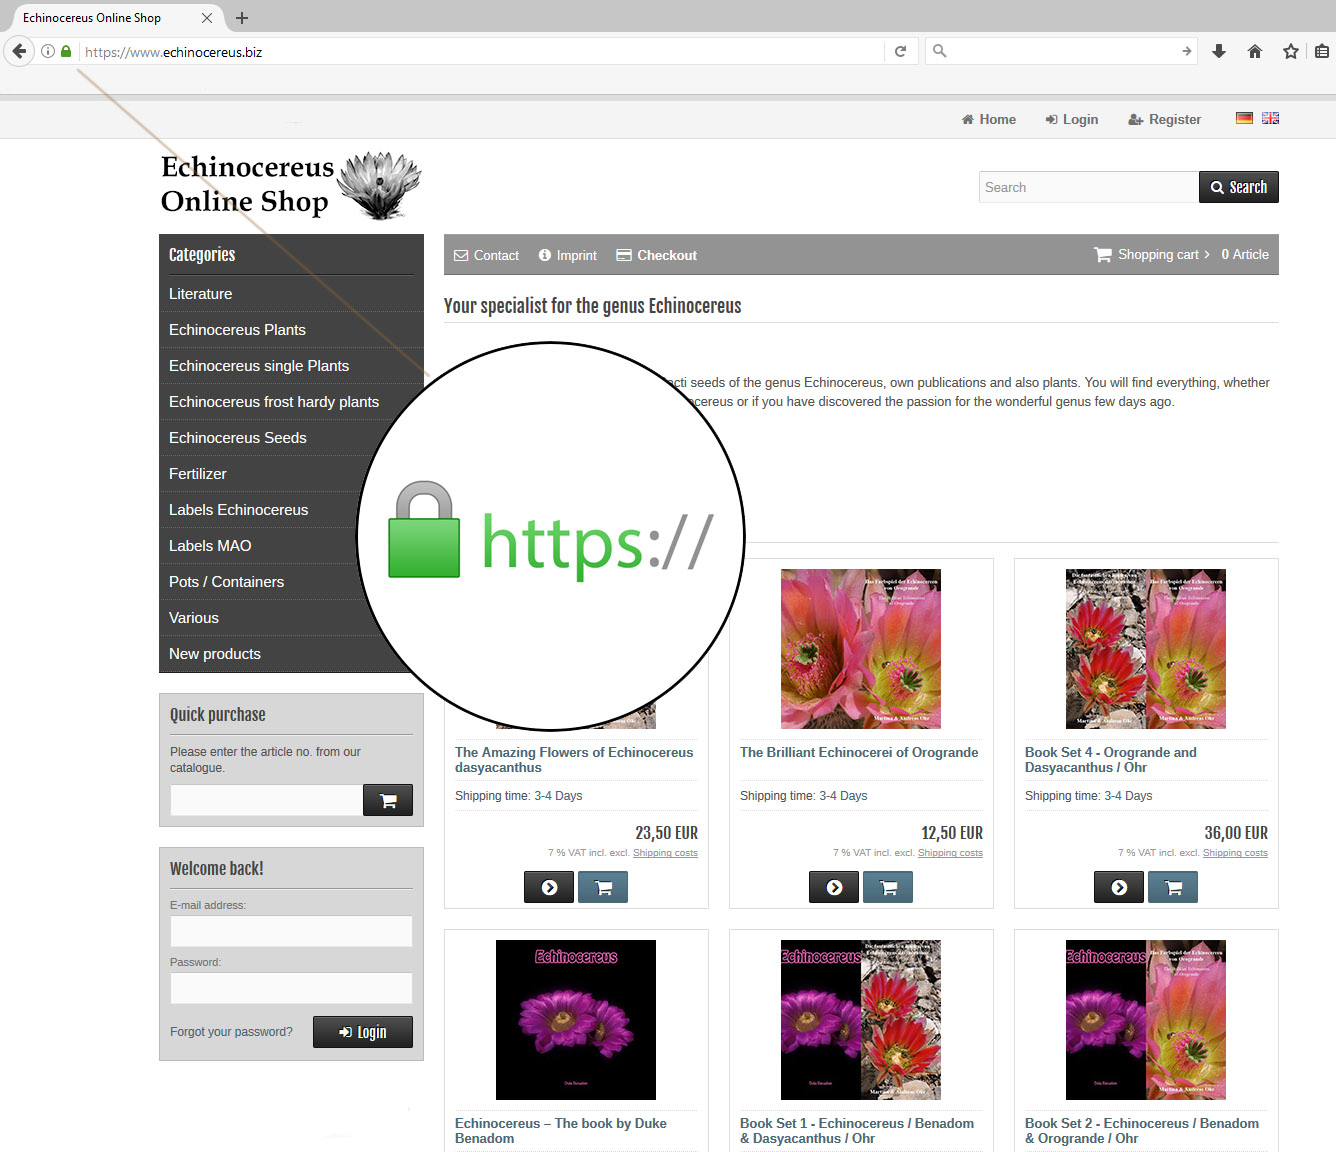 Echinocereus Online Shop jetzt mit SSL Verschlüsselung